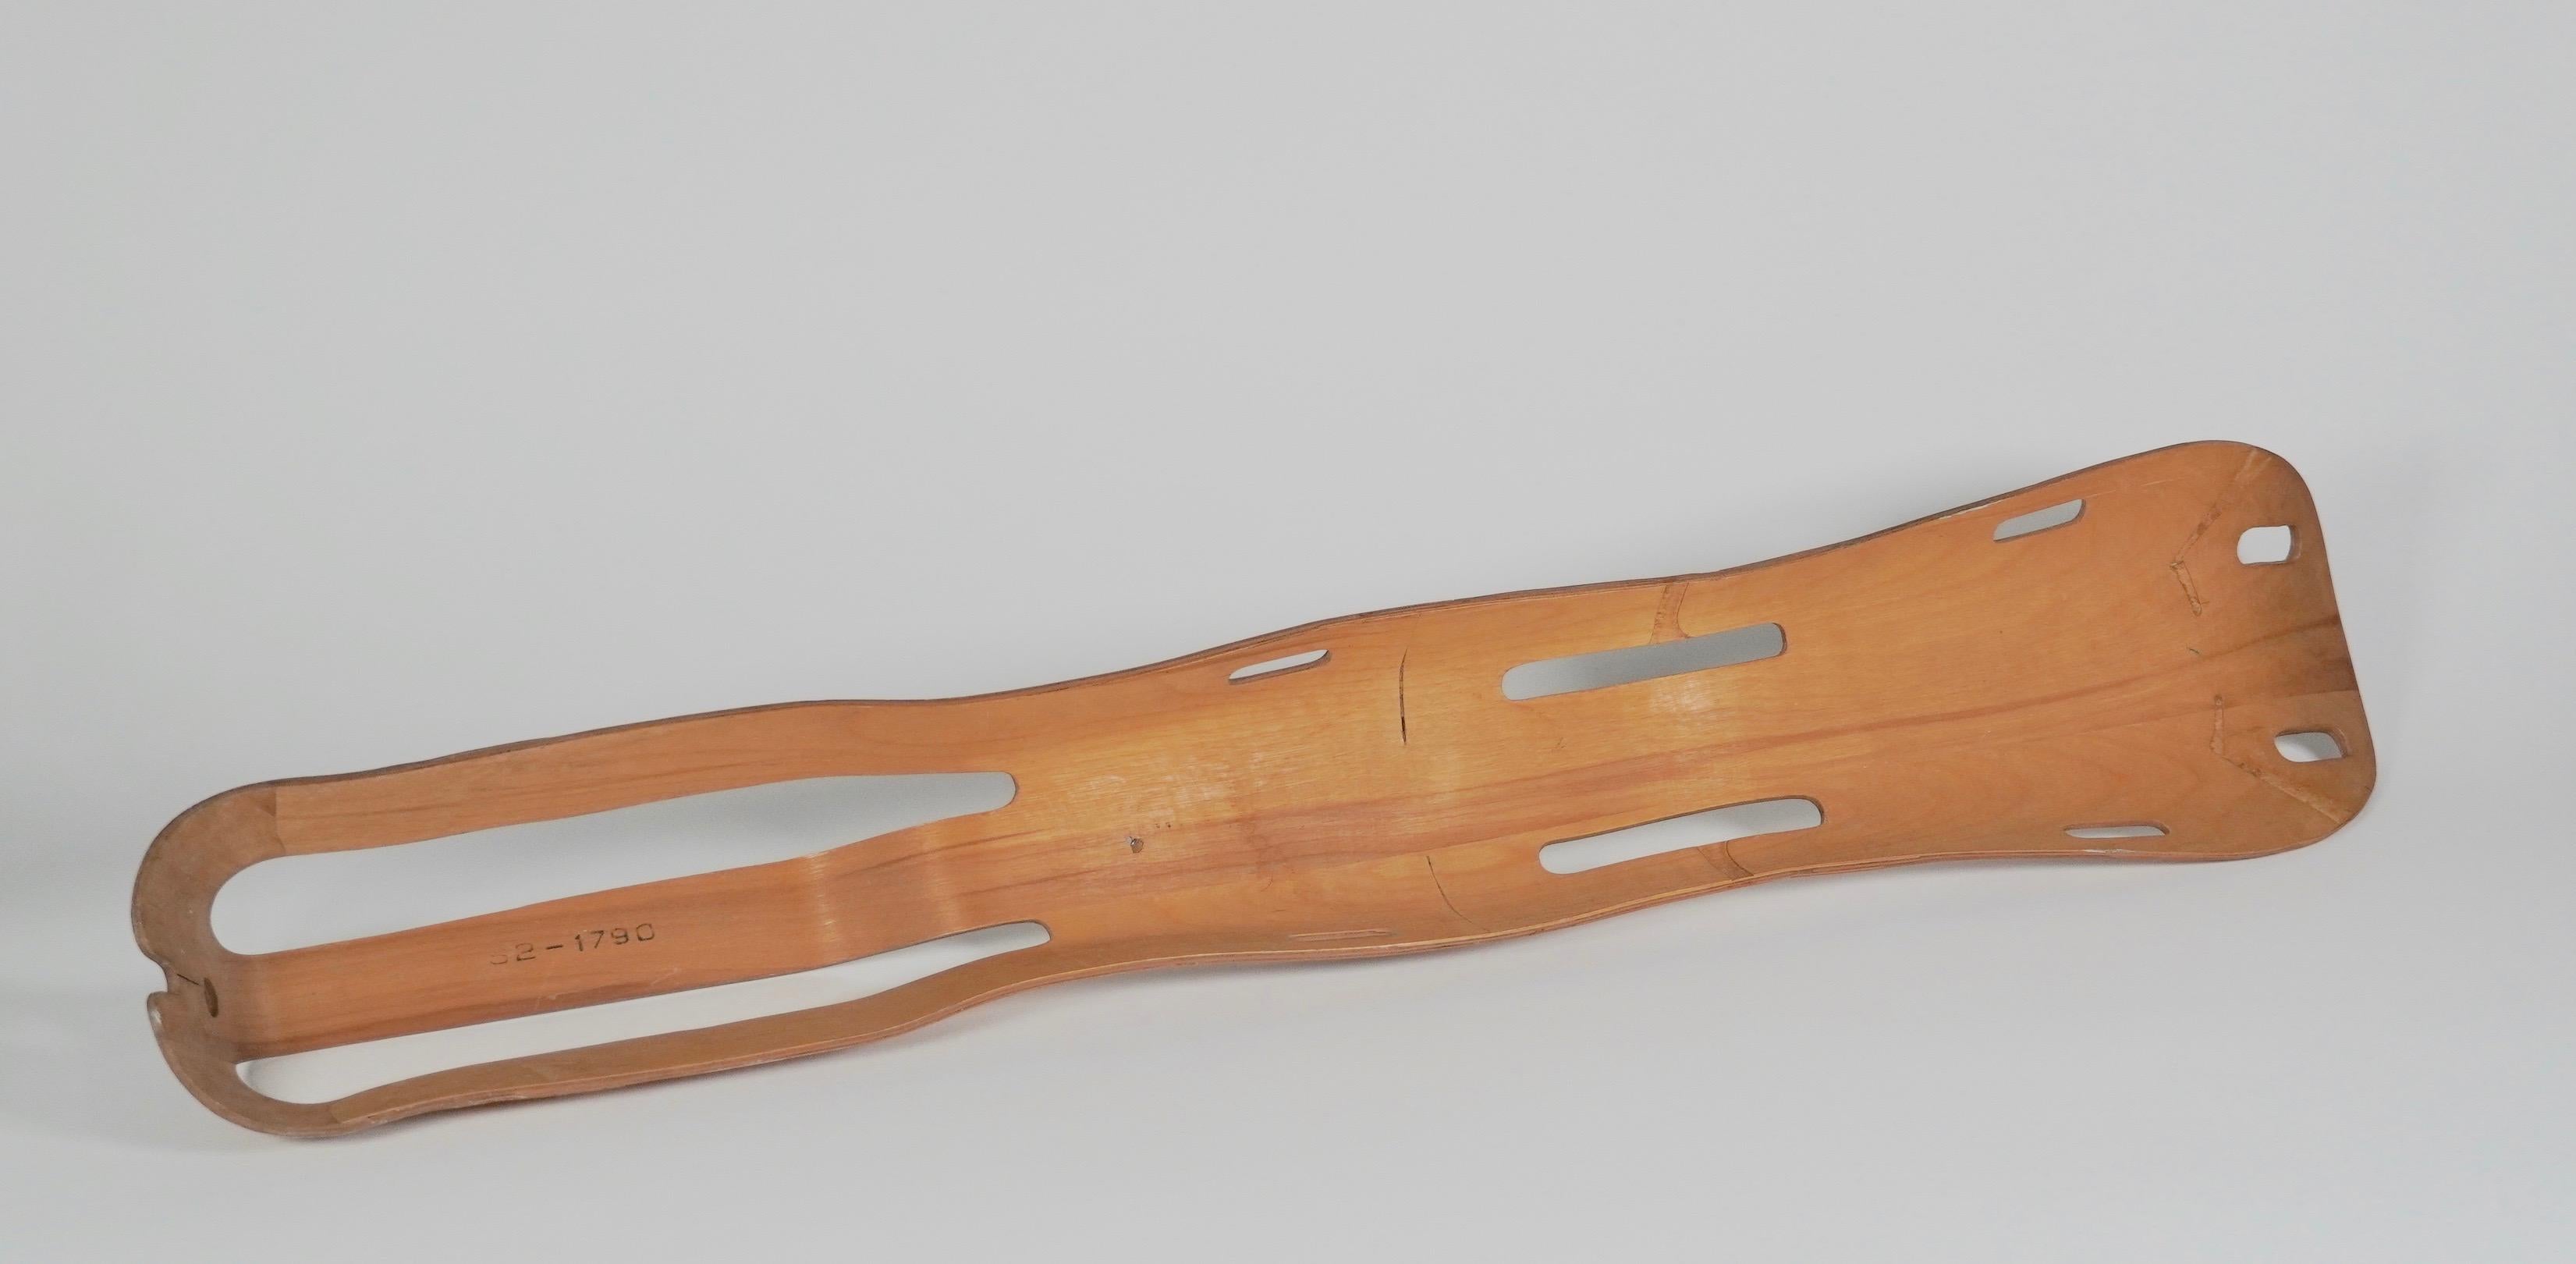 L'attelle de jambe en contreplaqué moulé a été créée par Ray et Charles Eames entre 1941 et 1942 pour la marine américaine. À cette époque, le contreplaqué était appelé 